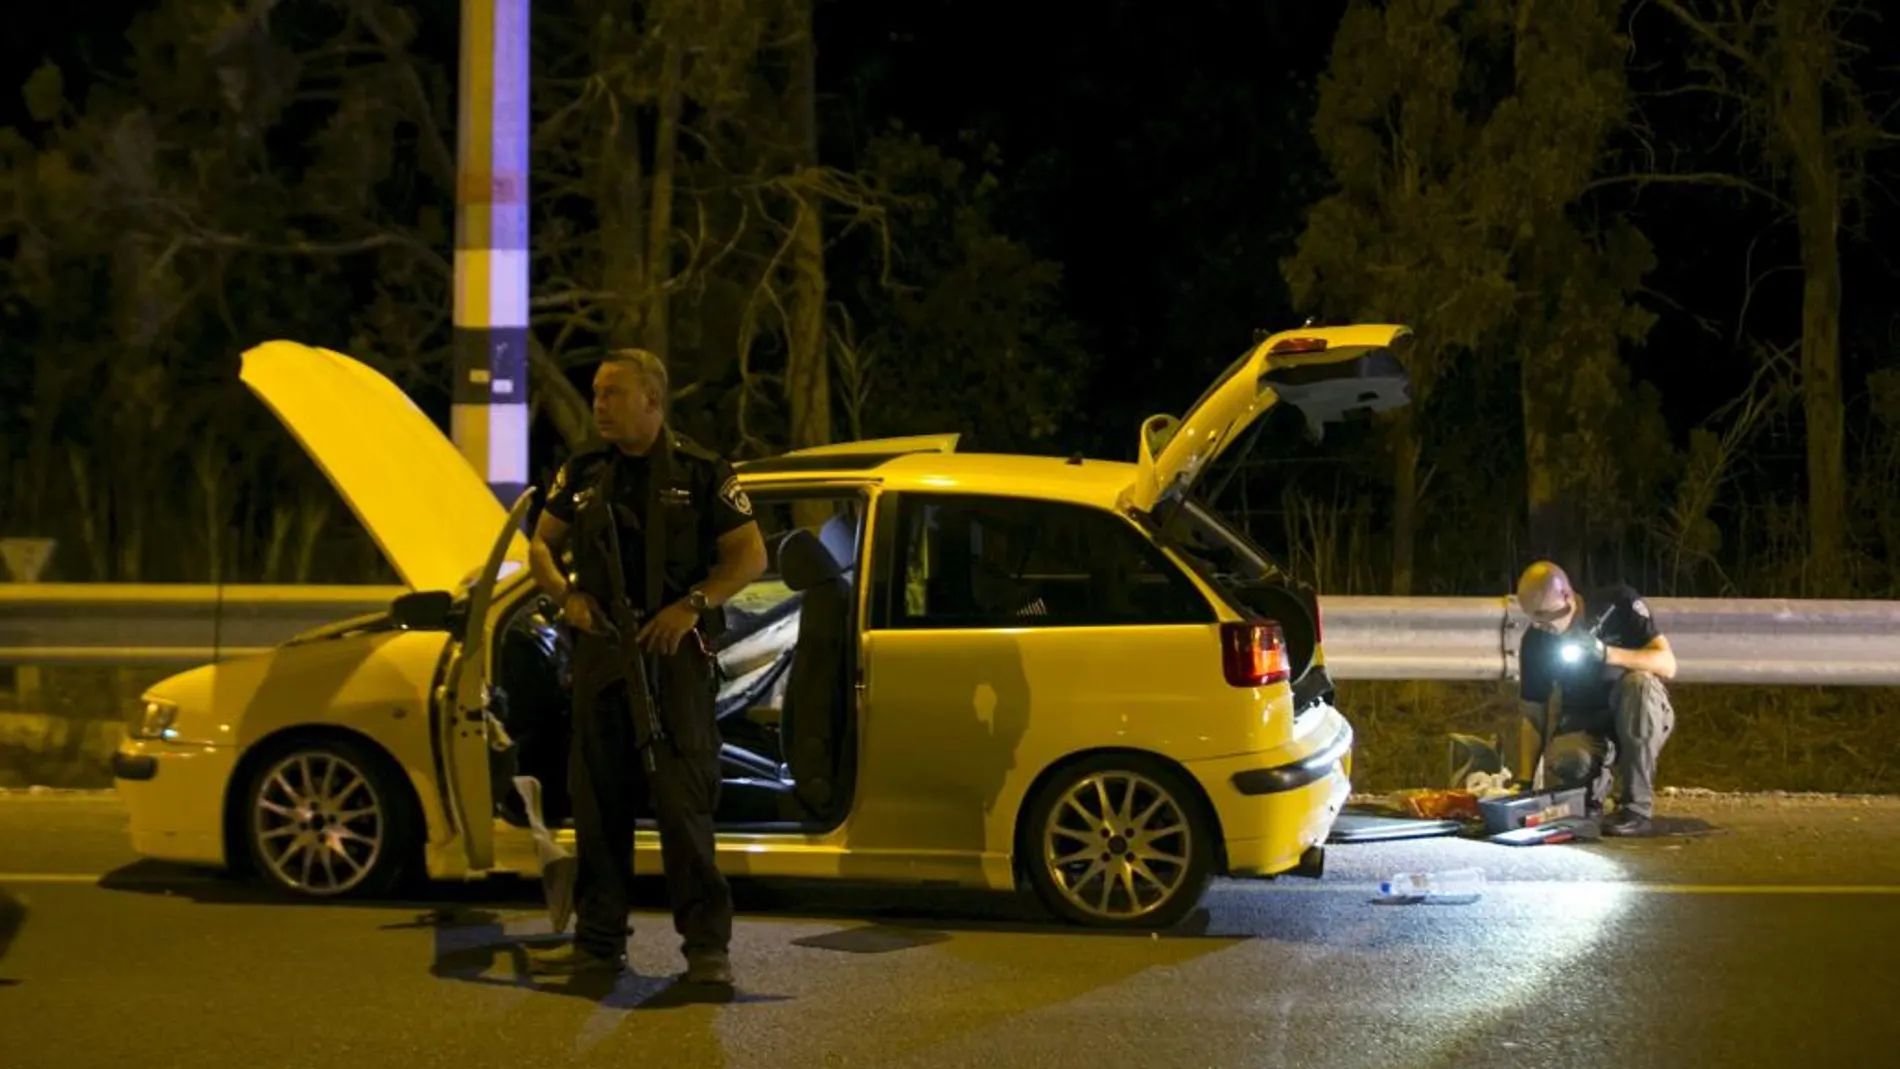 Policías israelíes junto al coche utilizado por un ciudadano árabe de Israel para atacar y herir a cuatro ciudadanos israelíes en Gan Shmuelt, Hadera